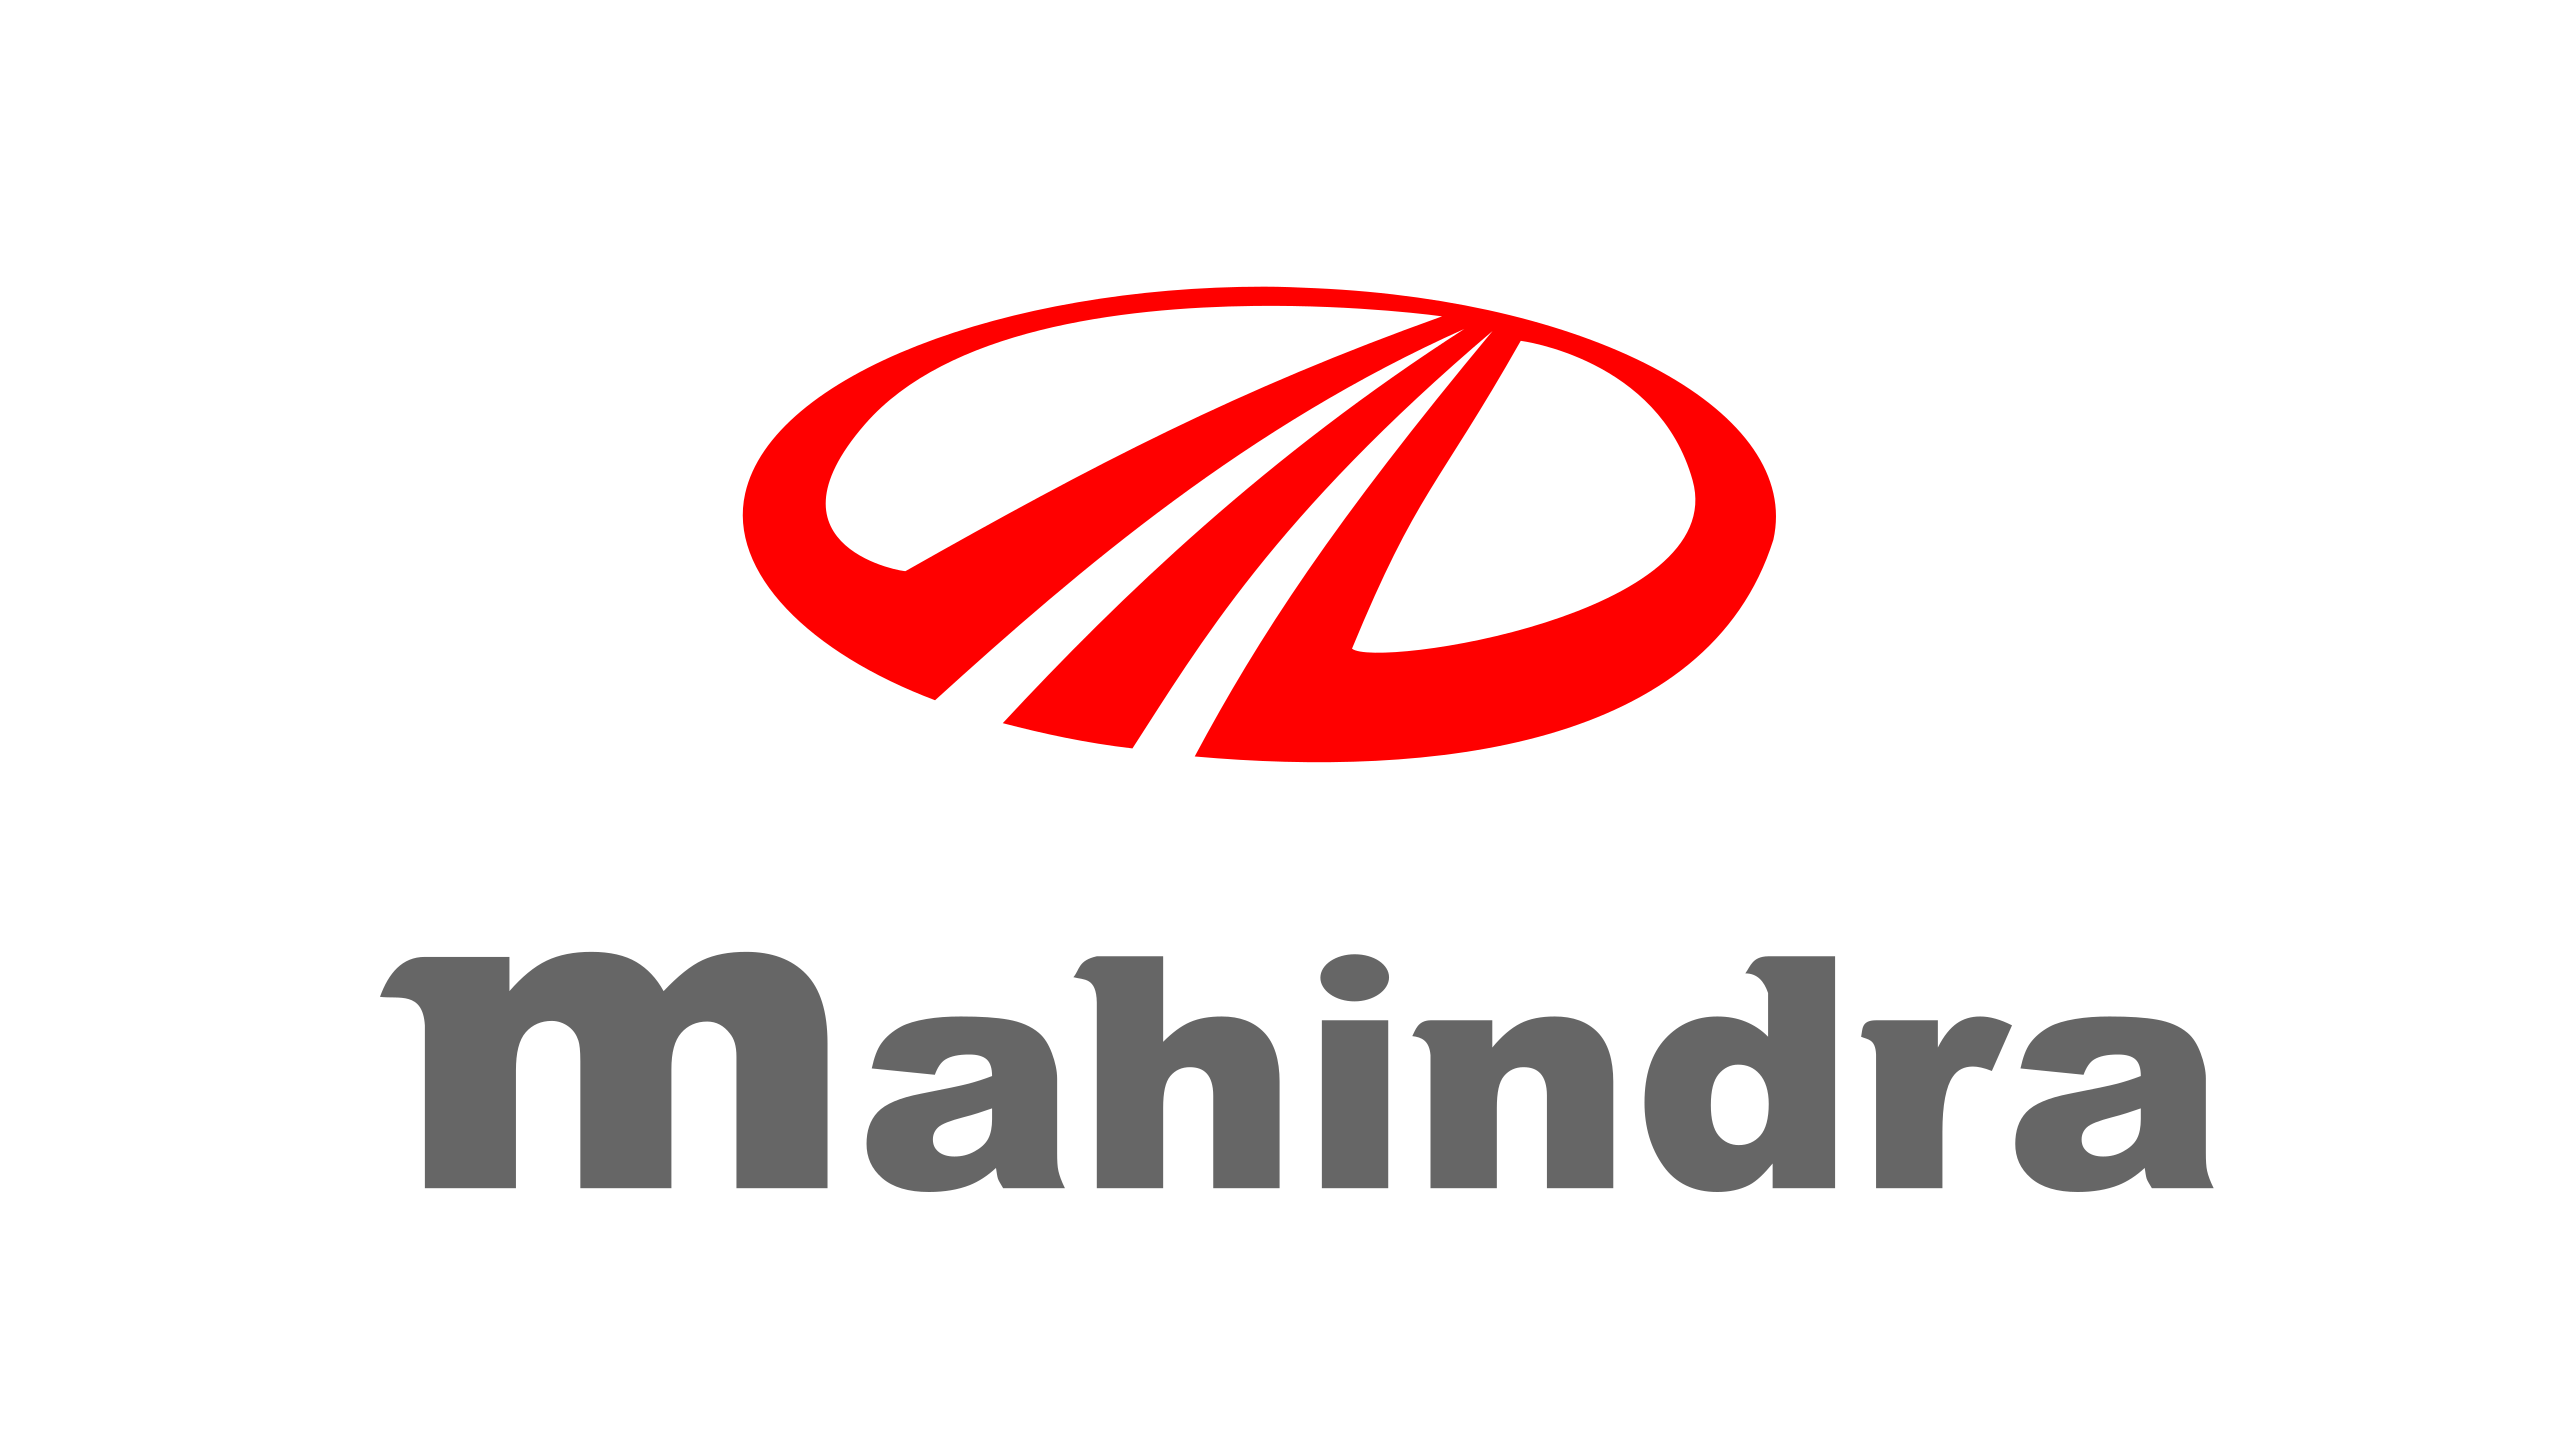 mahindra